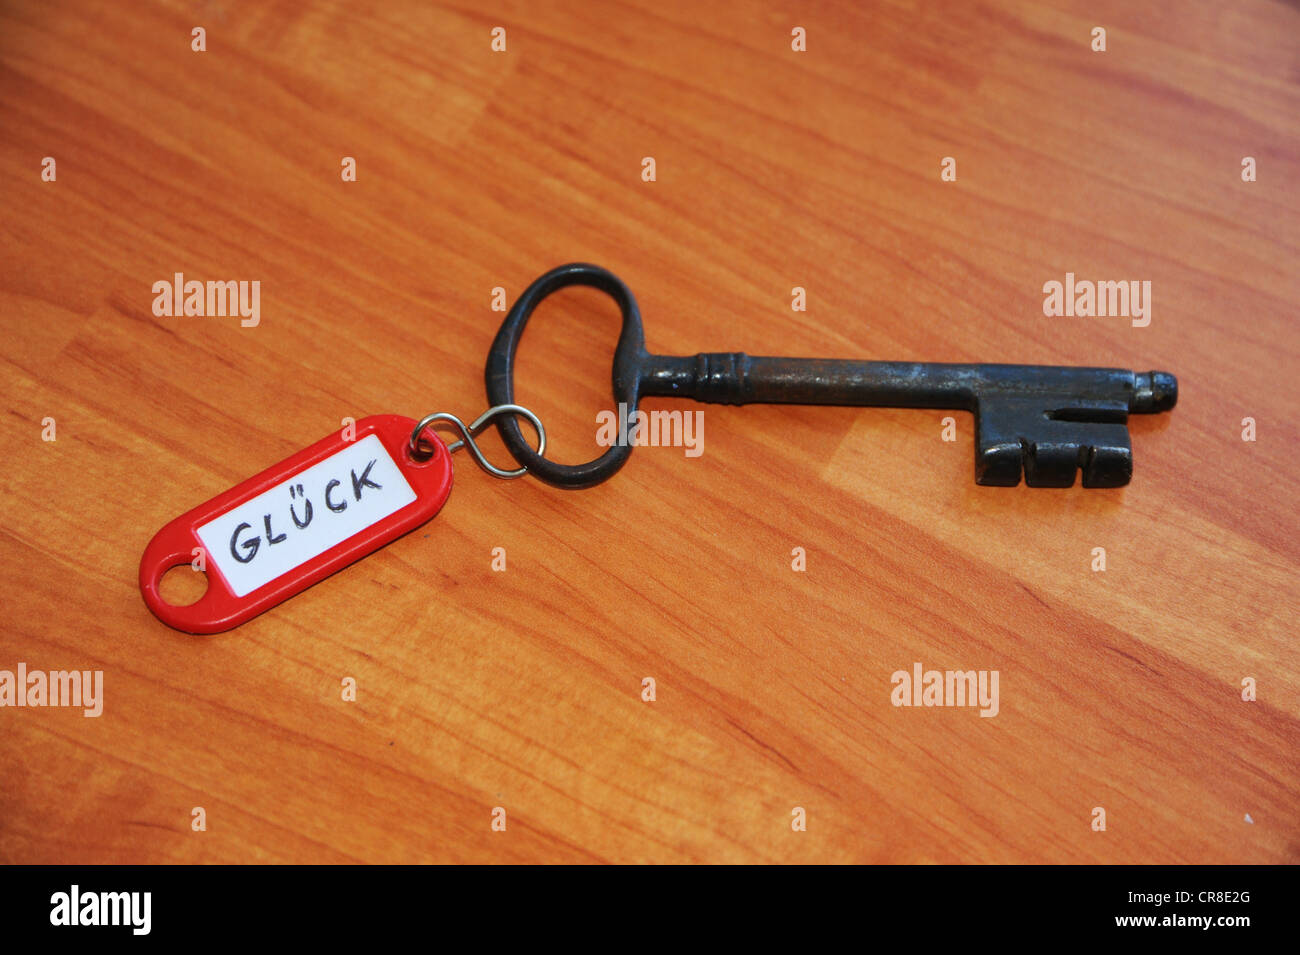 Anello chiave con il segno "Glueck', Tedesco per 'fortuna' immagine simbolica per 'chiave della felicità" Foto Stock